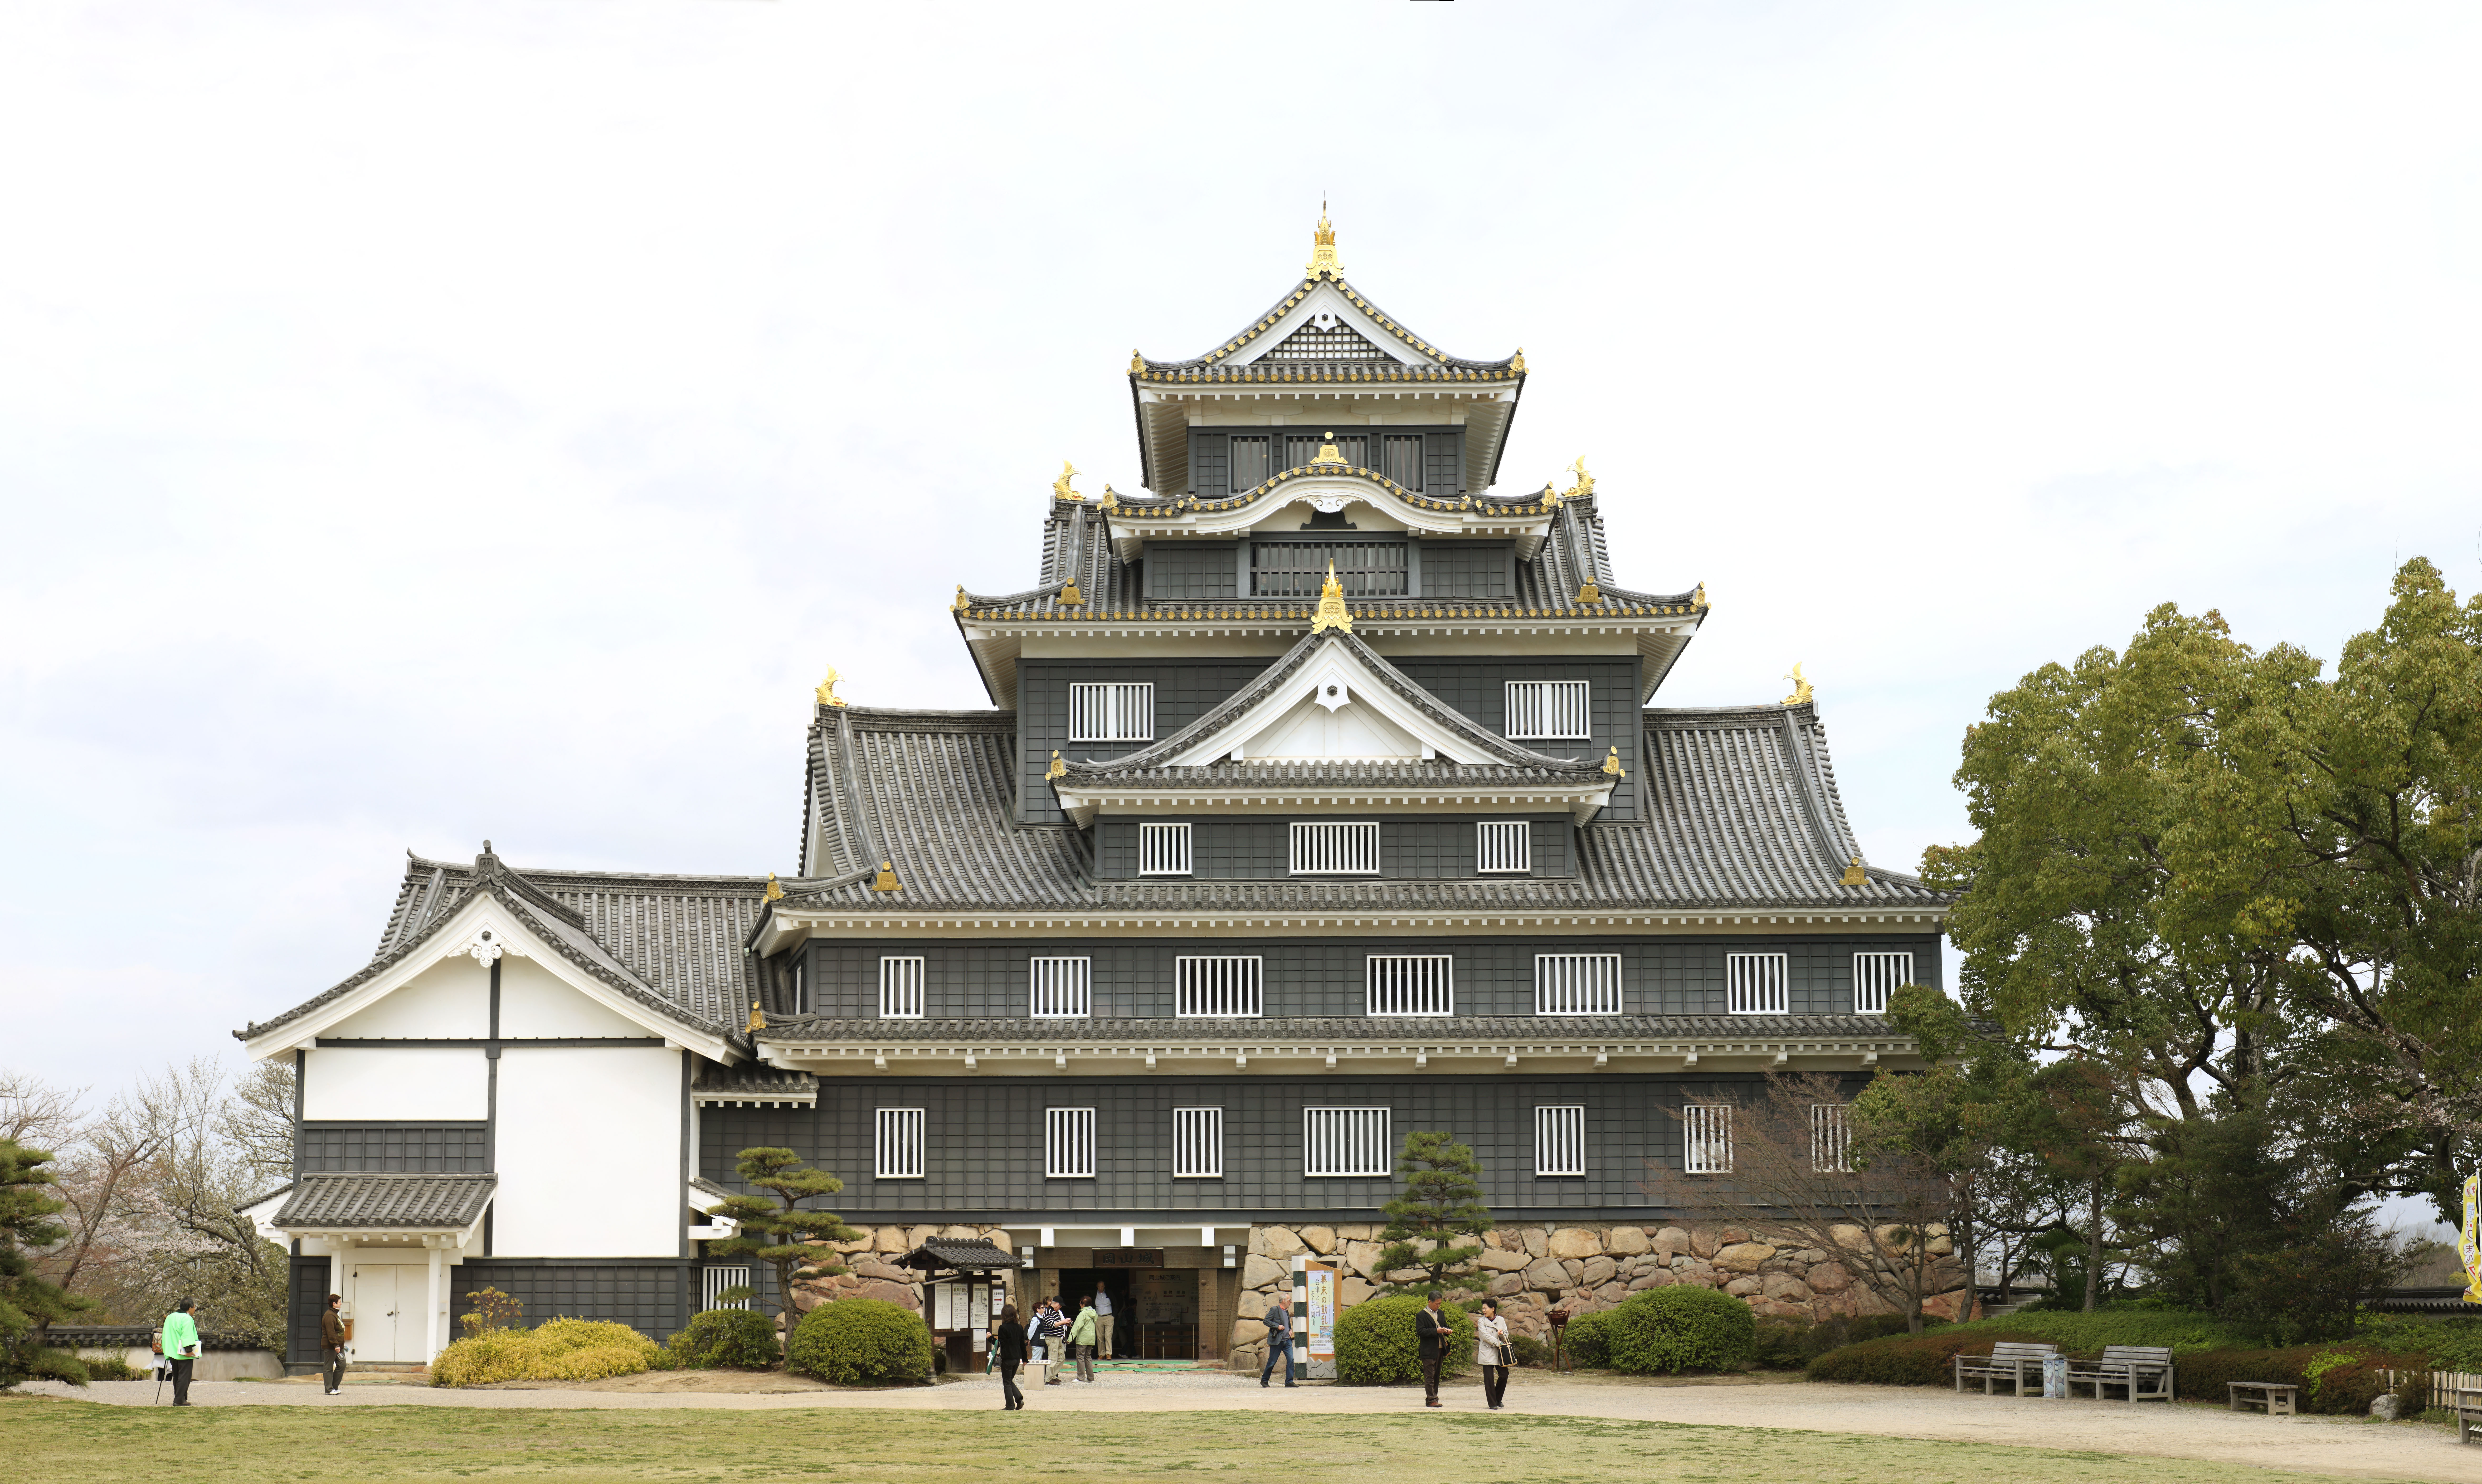 foto,tela,gratis,paisaje,fotografa,idea,Castillo de Okayama - jo, Castillo, La torre de castillo, Castillo de Crow, 